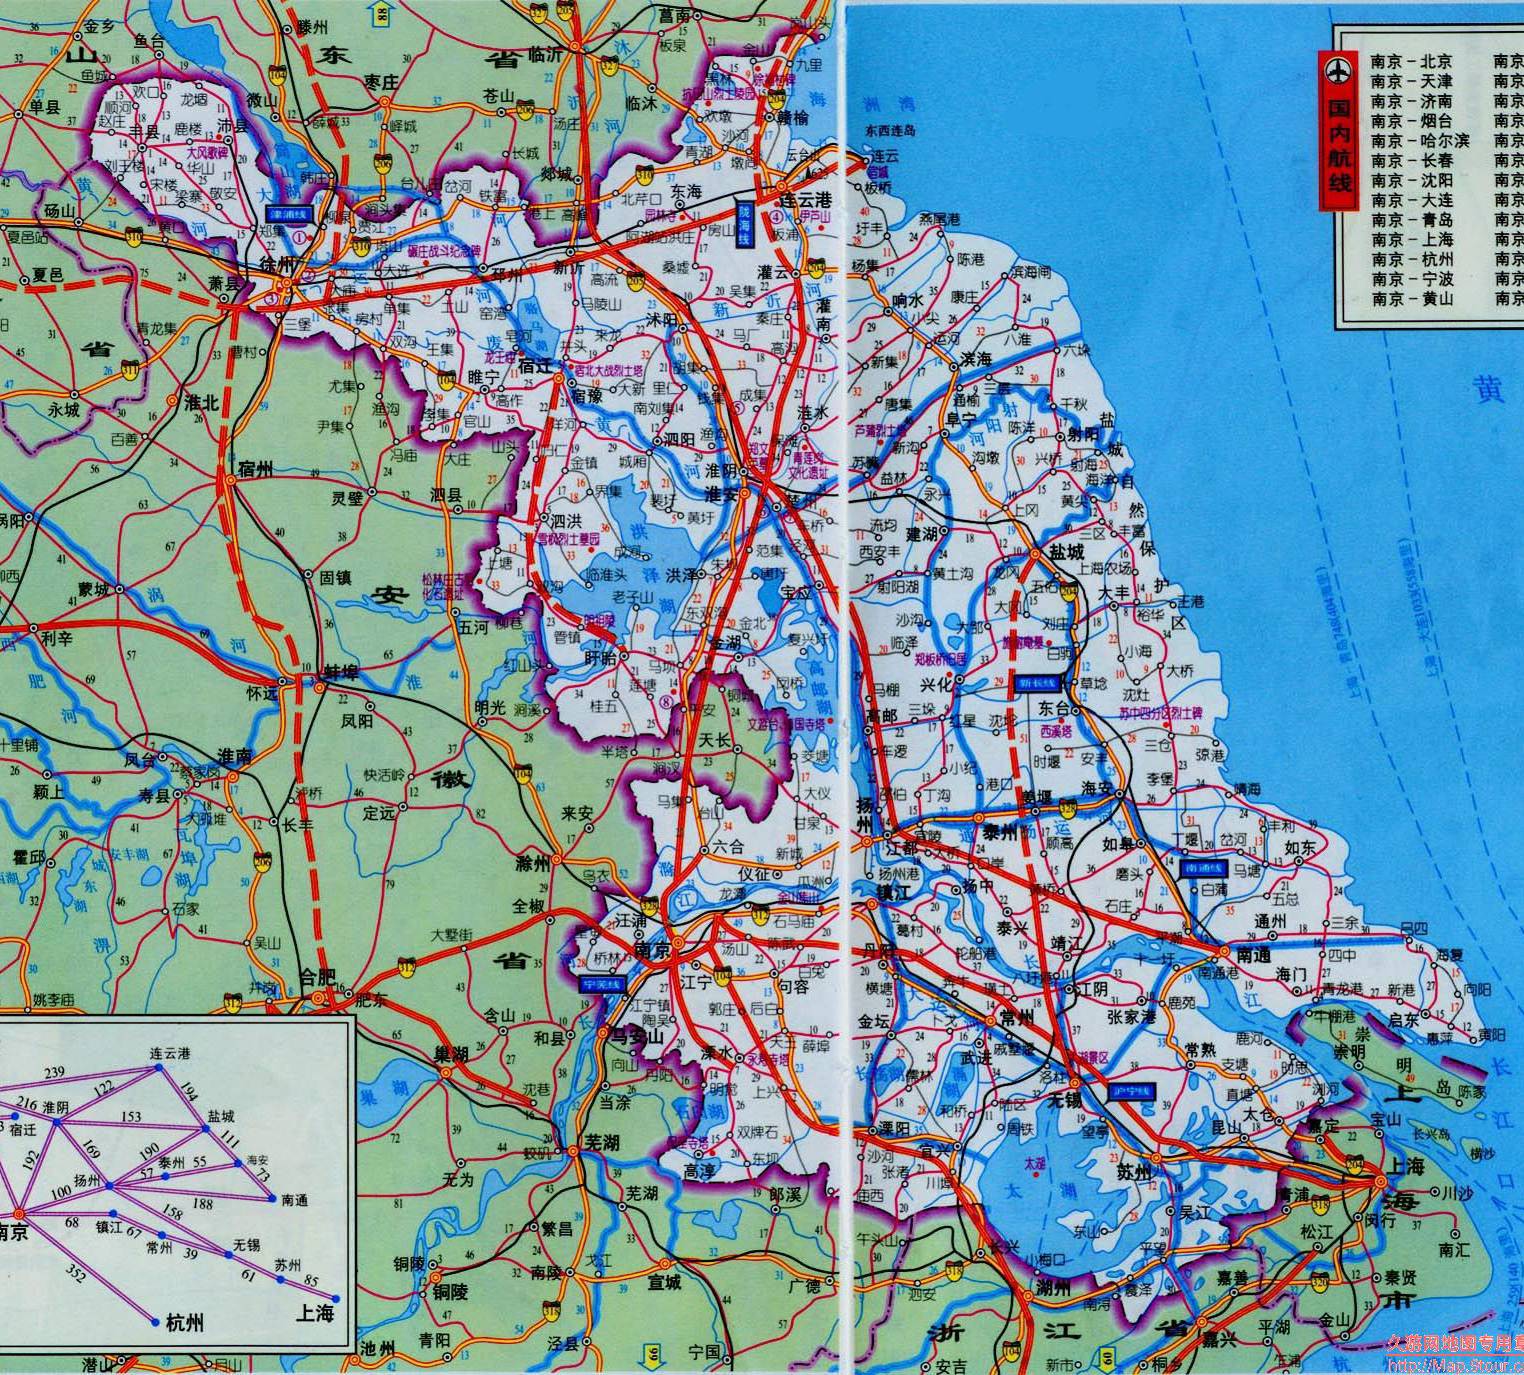 中国各个省份交通路线,旅游路线等,如上海地图高清版,江苏地图高清版